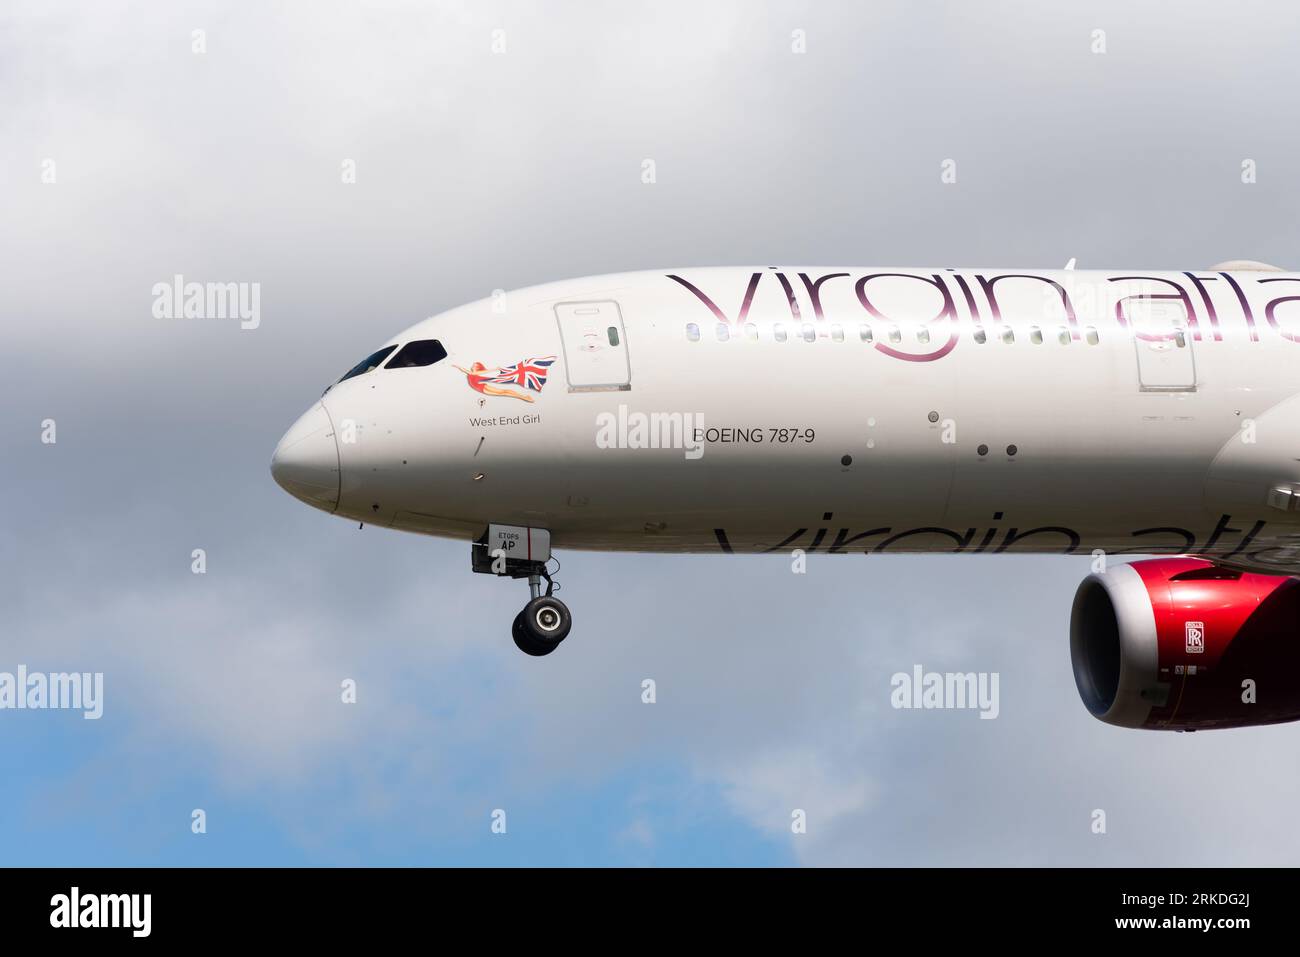 Virgin Atlantic Boeing 787-9 Dreamliner jet Airliner en finale à atterrir, aéroport de Londres Heathrow, Royaume-Uni. Nommée West End Girl. Art du nez de la dame écarlate Banque D'Images